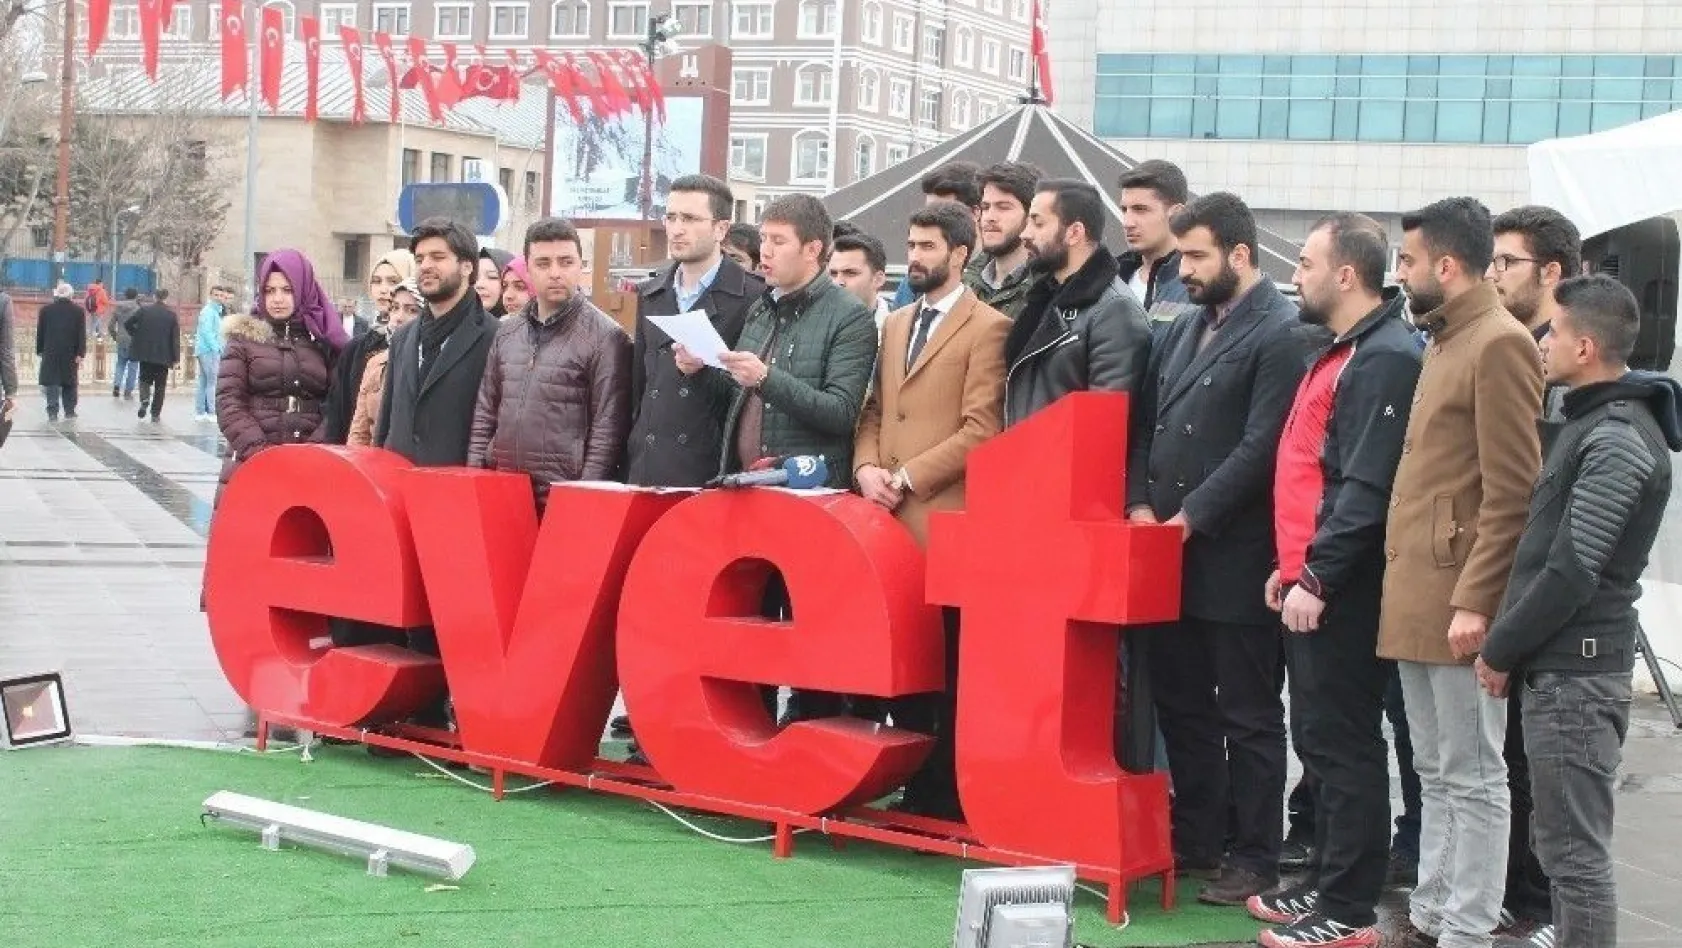 Erzurum Gençlik Platformu, referandum oyunu açıkladı
